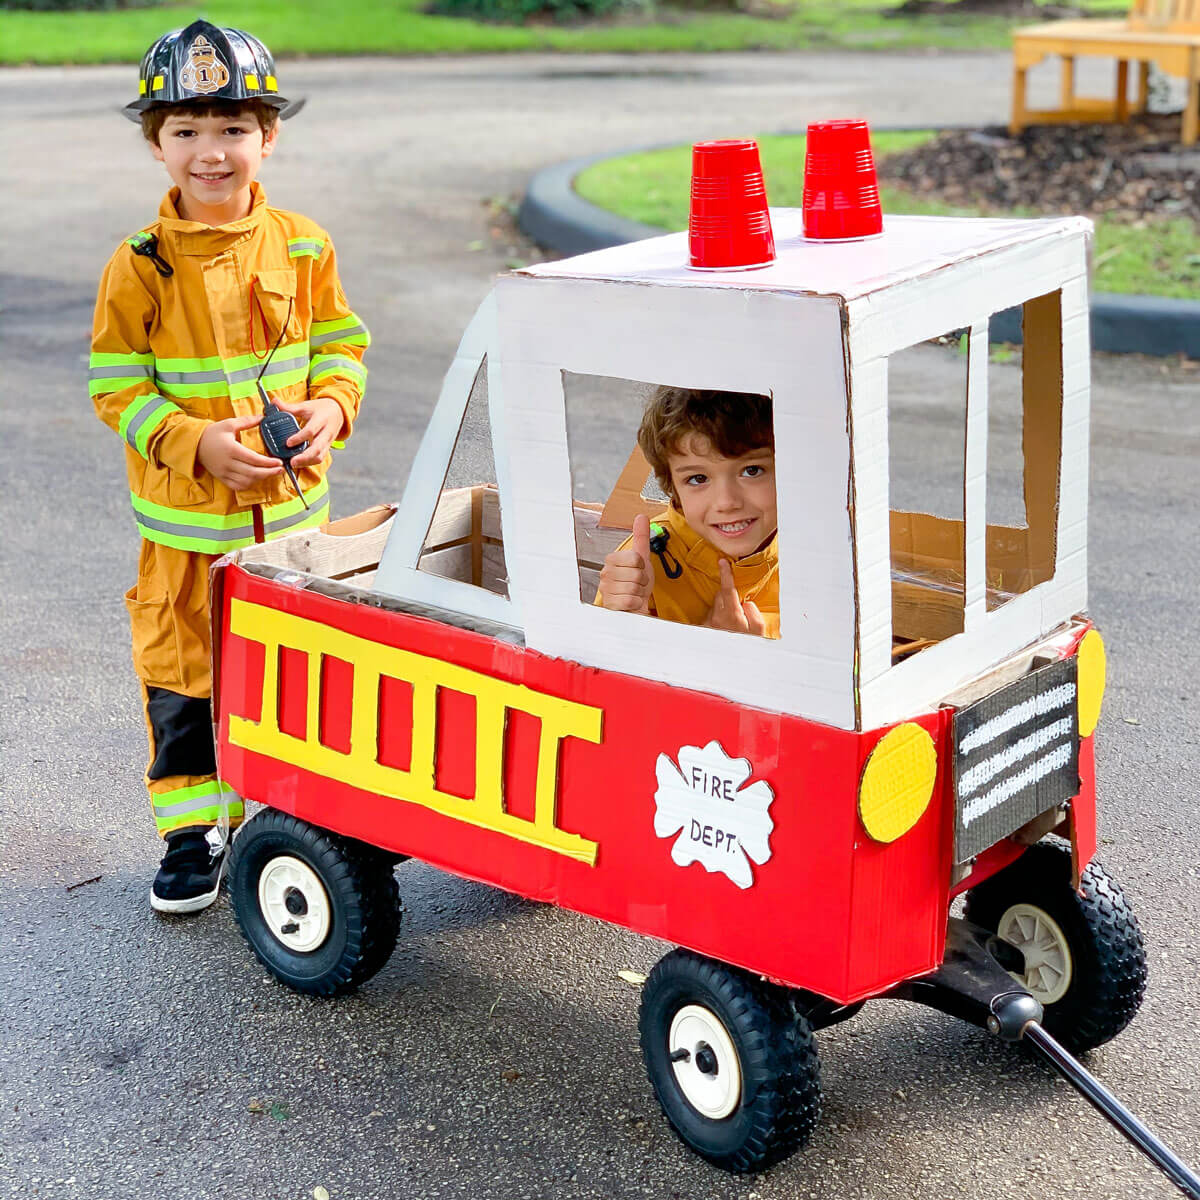 diy firefighter fireman firewoman firetruck costume parade float